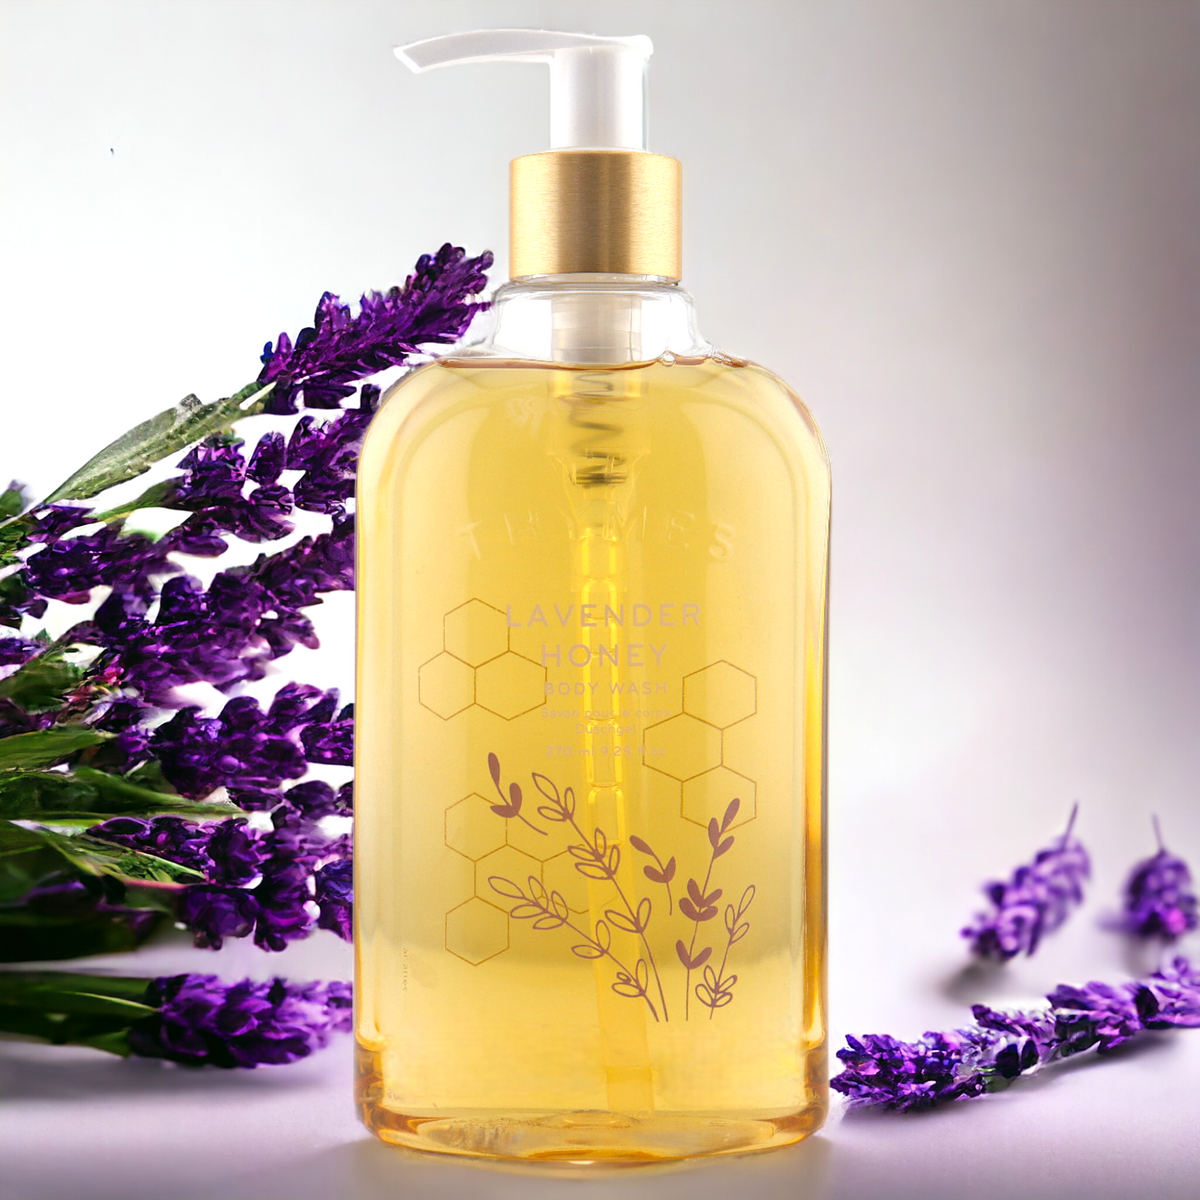 Lavender Honey Body Wash - 9.25 oz